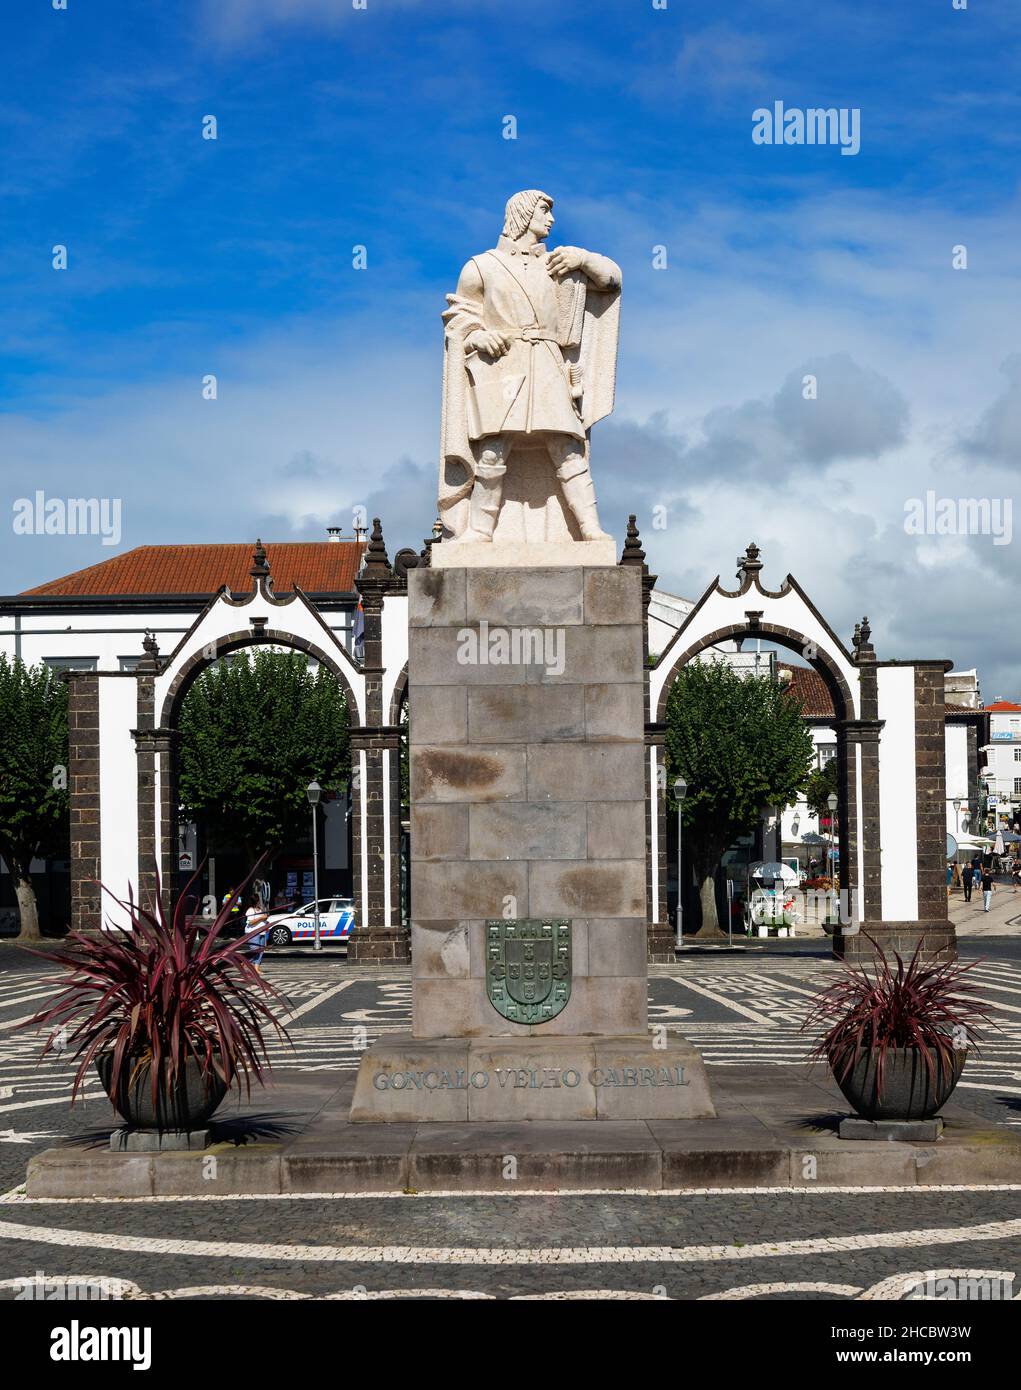 Portogallo, Azzorre, Ponta Delgada, Monumento di Goncalo Velho Cabral - esploratore e comandante in Ordine militare di Cristo Foto Stock